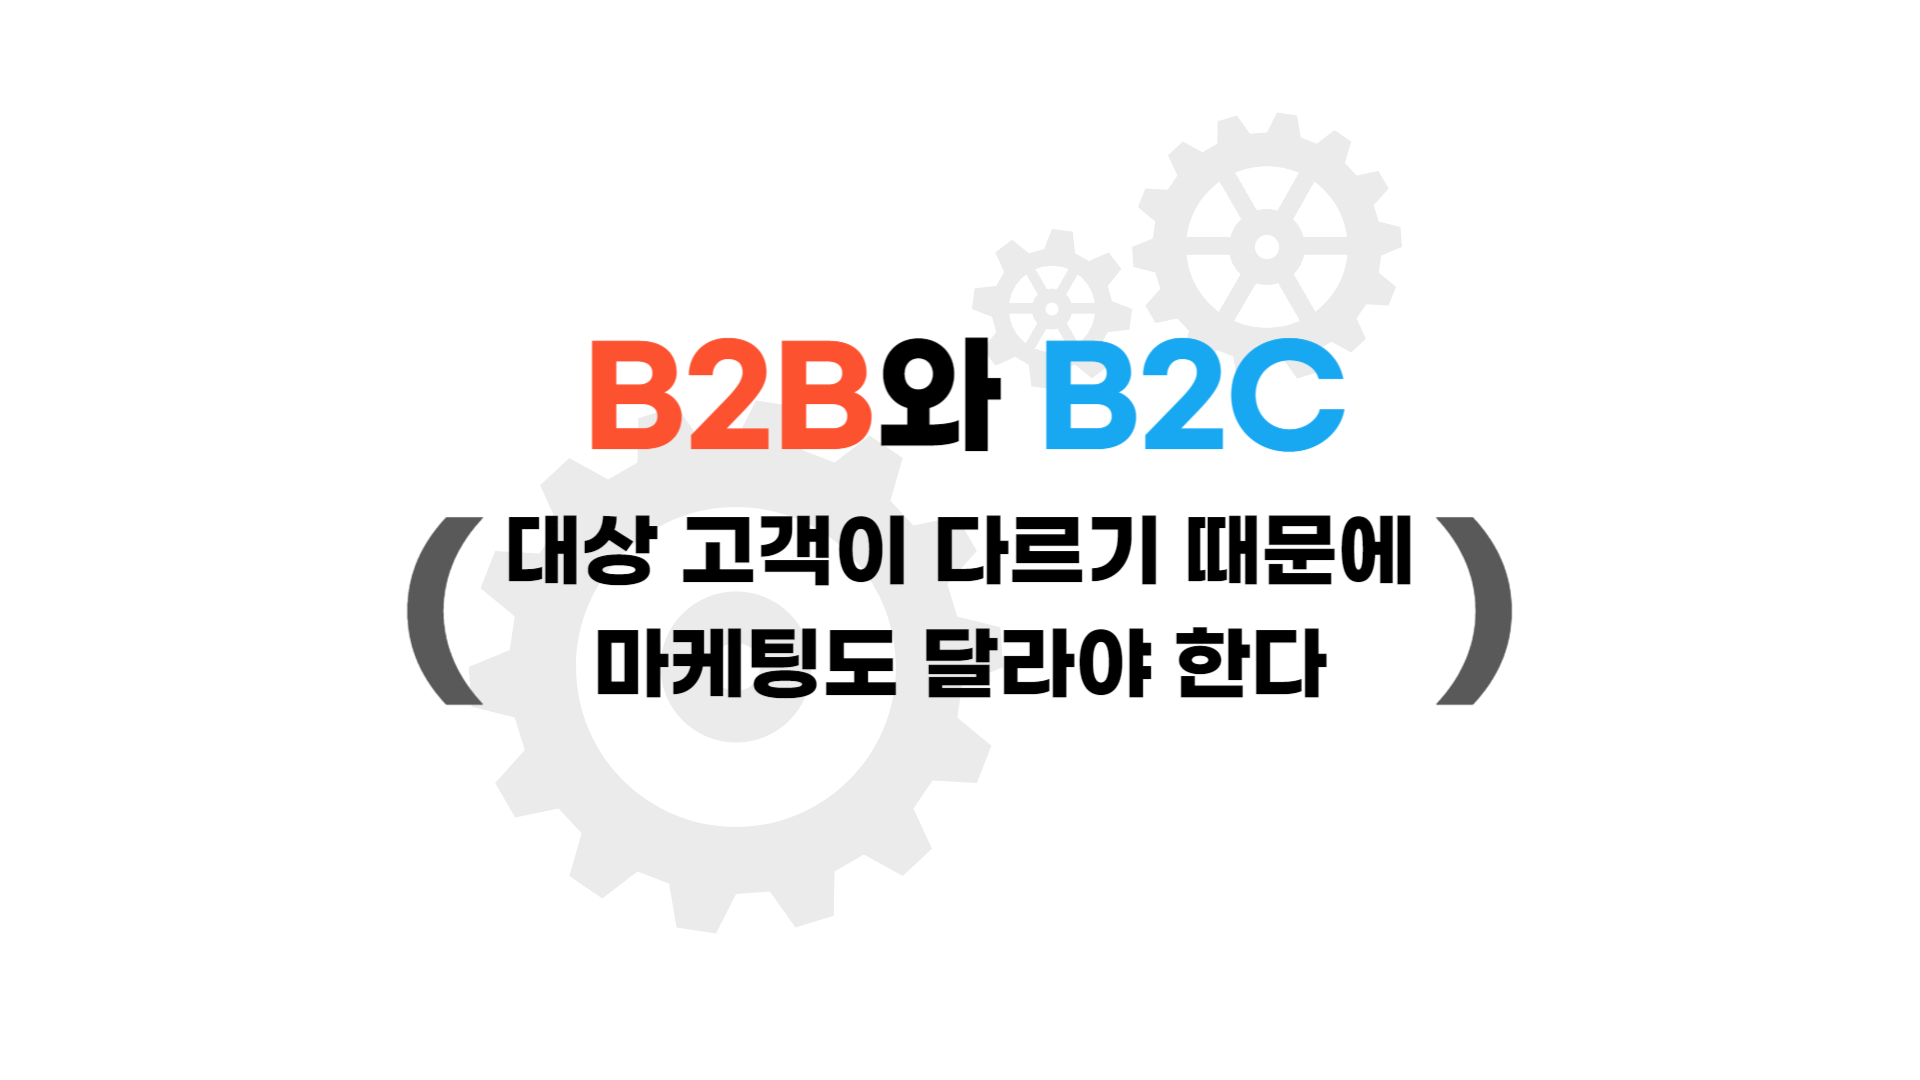 B2B와 B2C는 대상 고객이 다르기 때문에 마케팅도 달라야 한다.